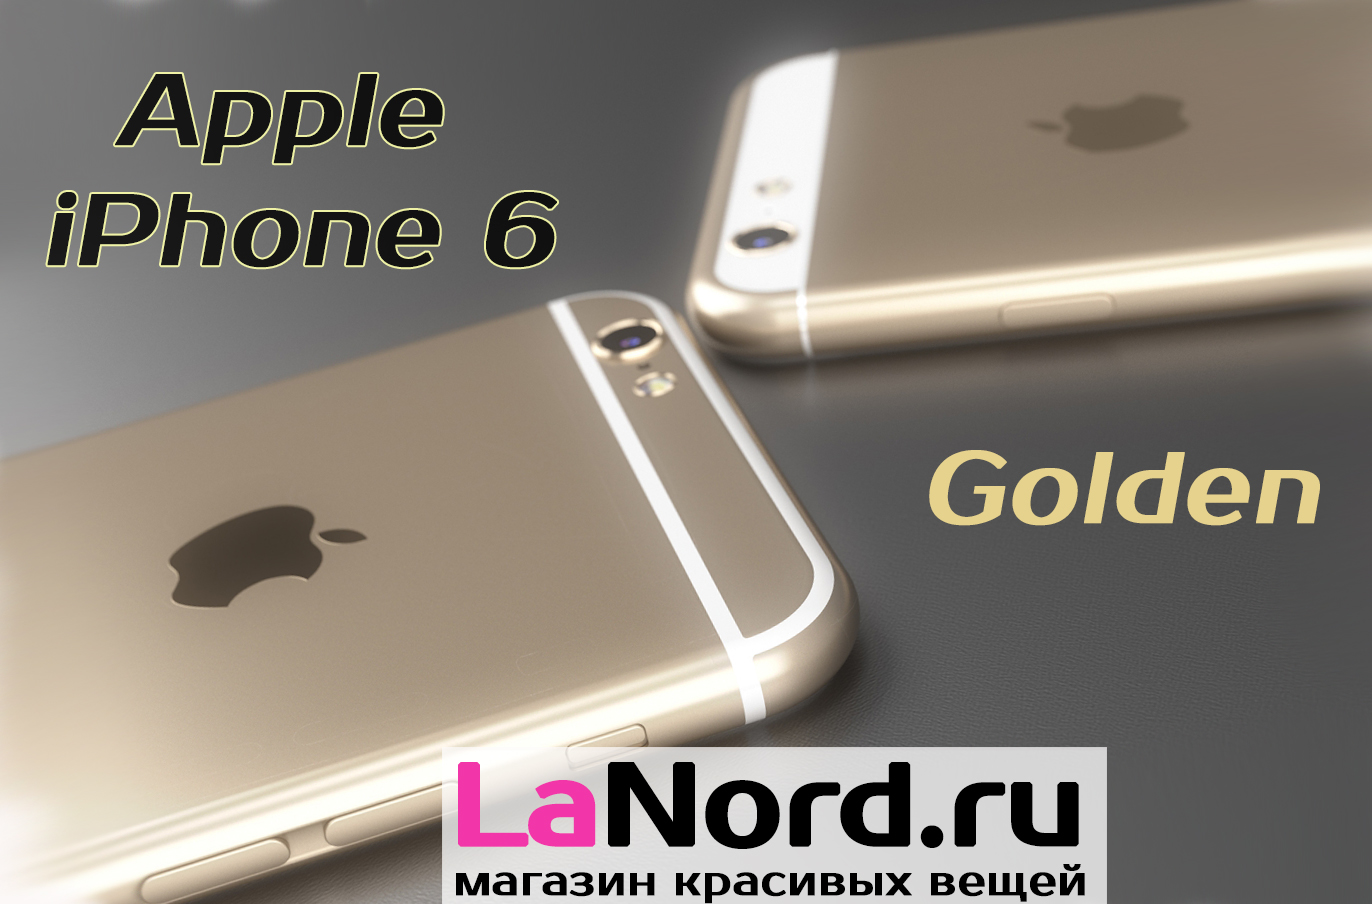 Apple iPhone 6 64GB Gold (золотой) восстановленный